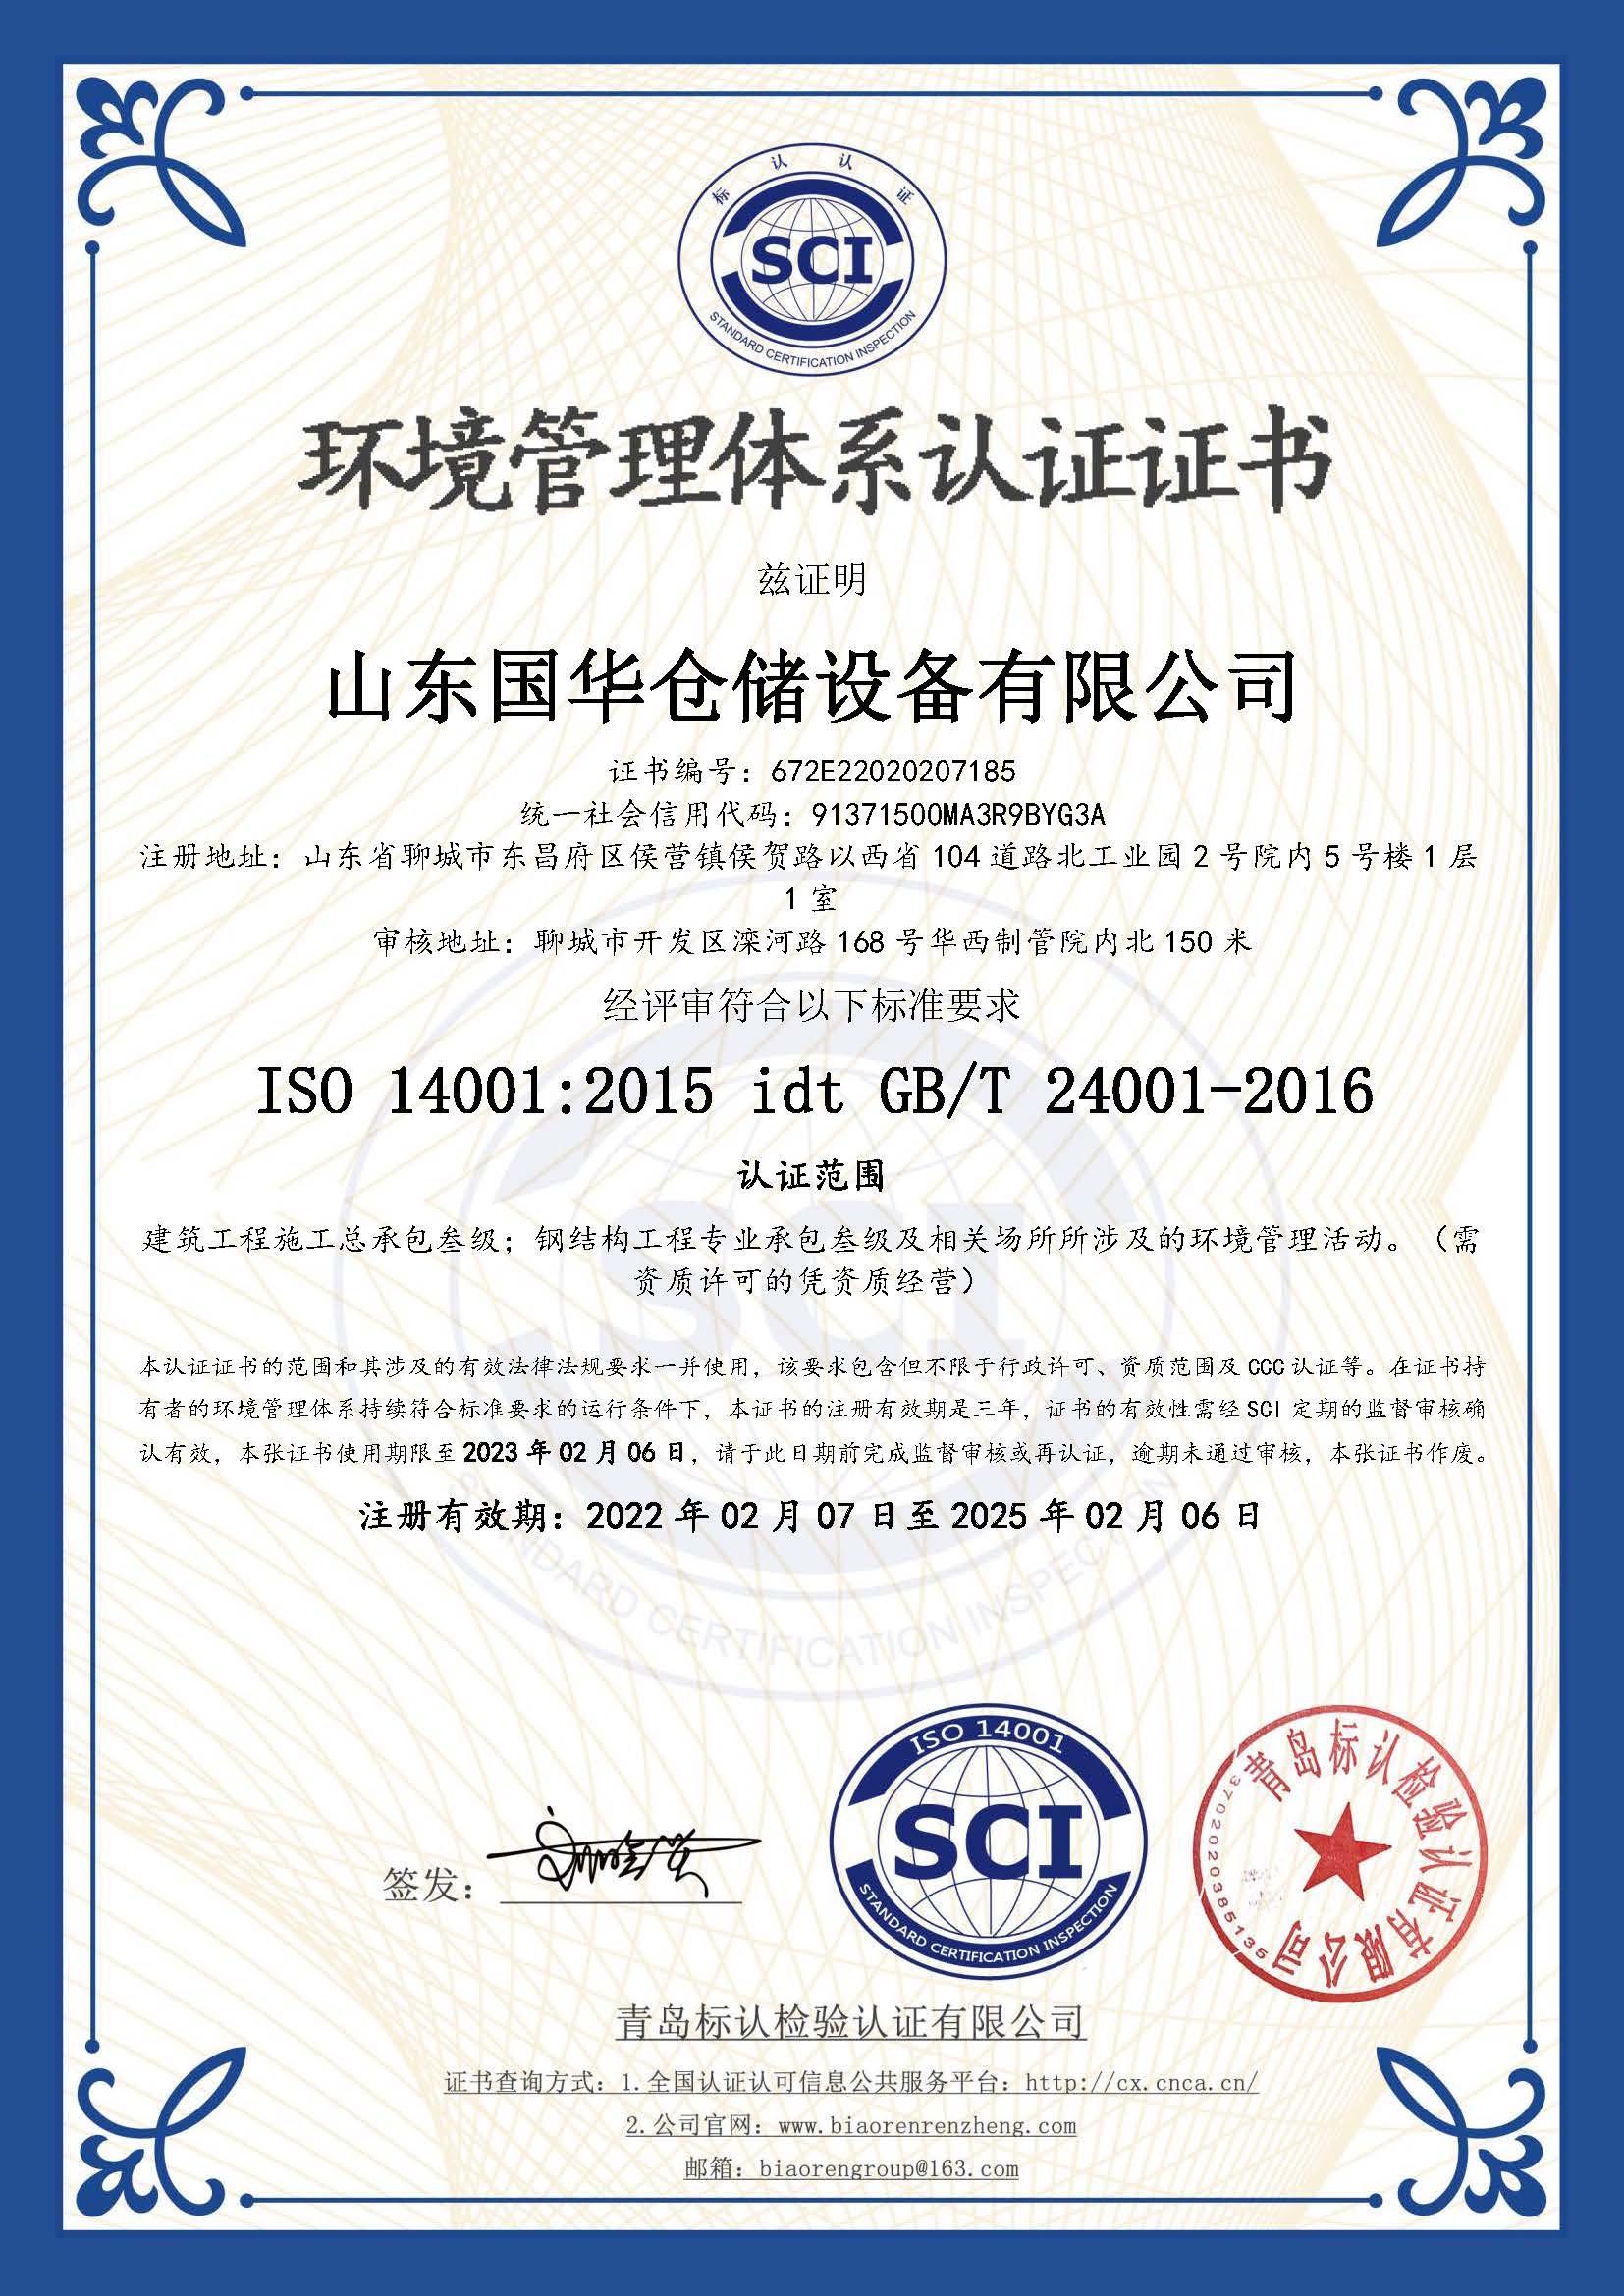 芜湖钢板仓环境管理体系认证证书